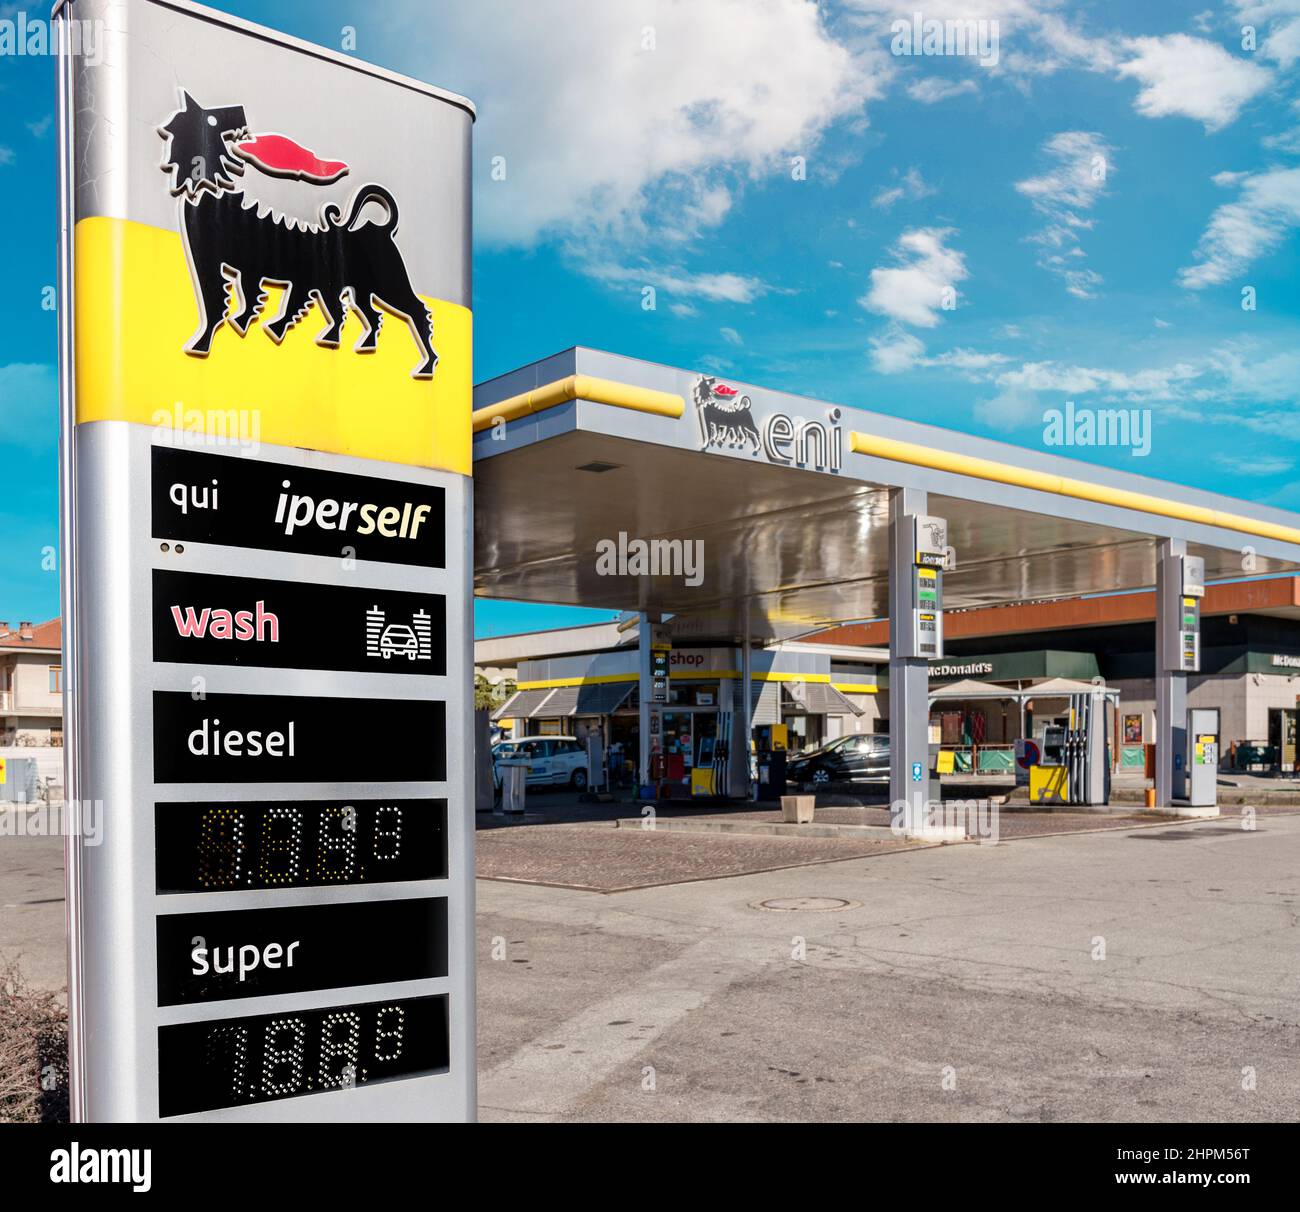 Carburante eni immagini e fotografie stock ad alta risoluzione - Alamy